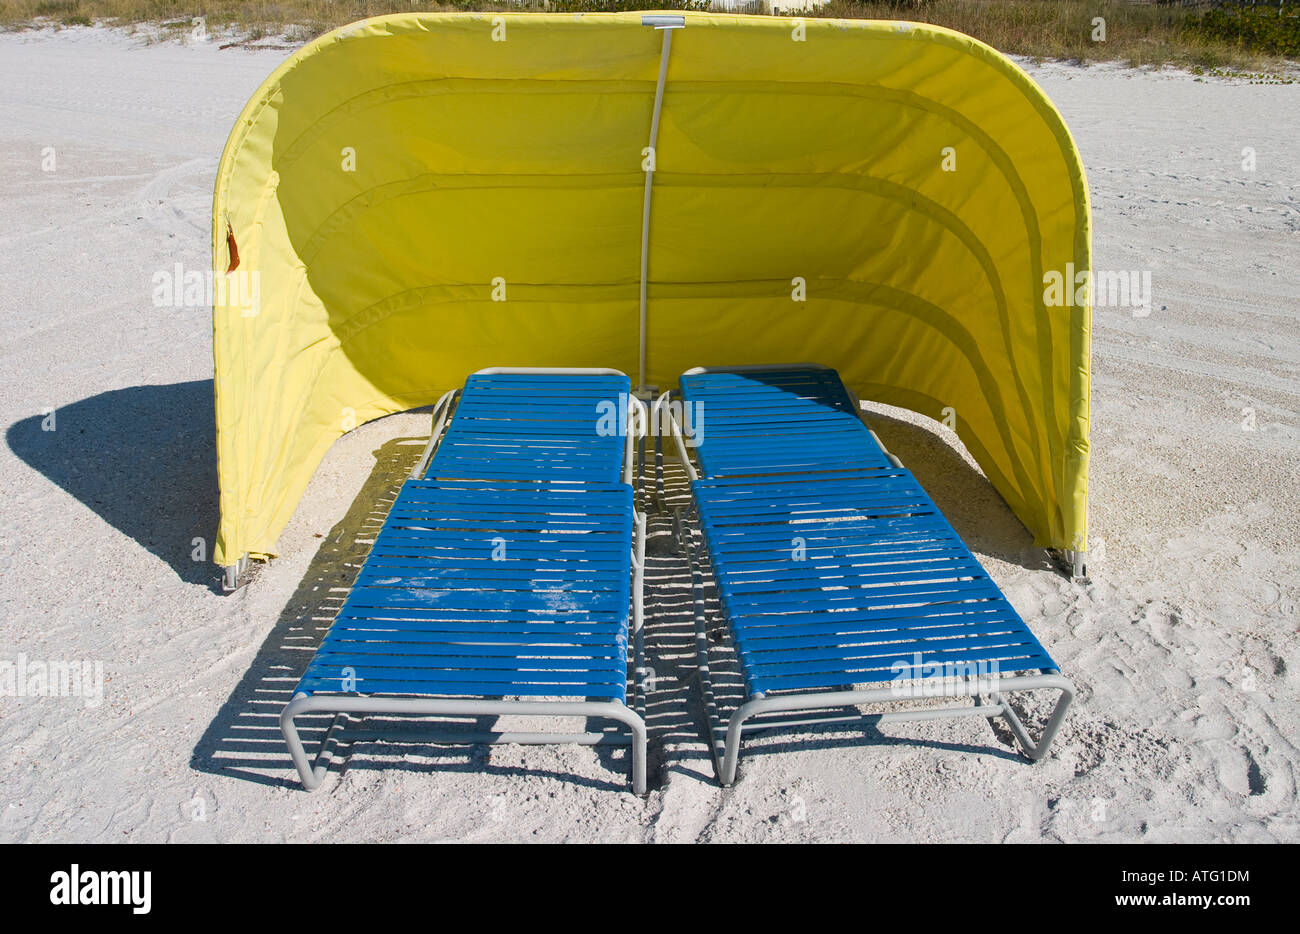 L'abri du vent en jaune. Deux chaises longues de plage bleu en dessous d'une toile jaune soleil et vent sur une plage de sable blanc Banque D'Images